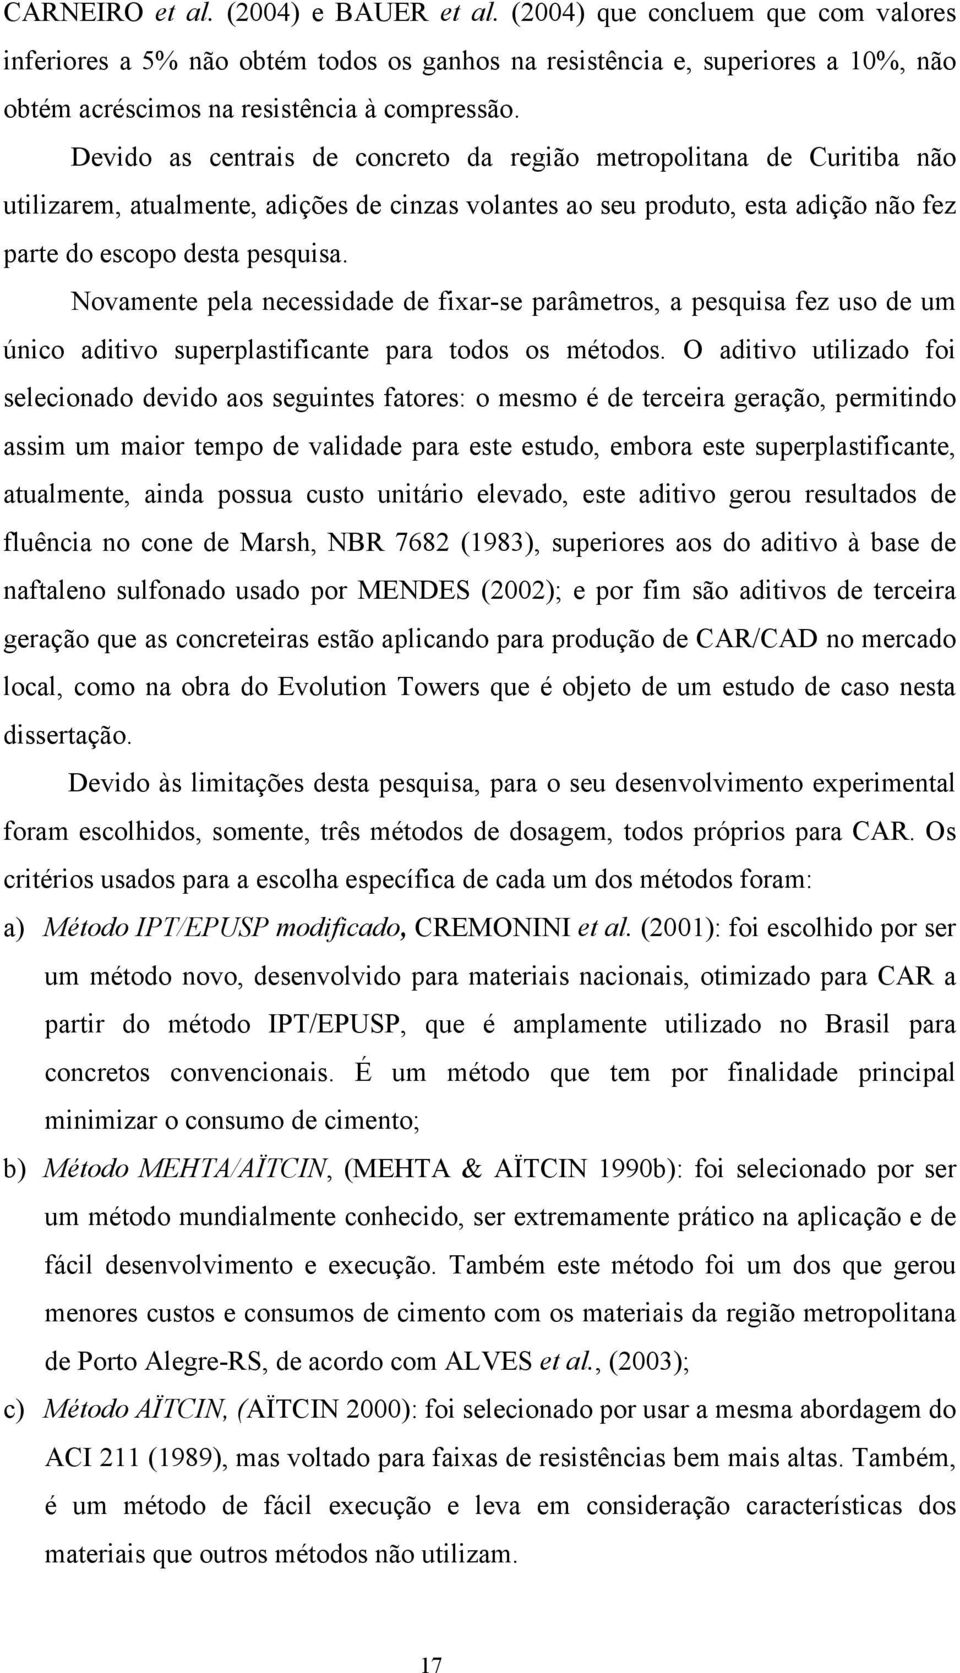 Devido as centrais de concreto da região metropolitana de Curitiba não utilizarem, atualmente, adições de cinzas volantes ao seu produto, esta adição não fez parte do escopo desta pesquisa.